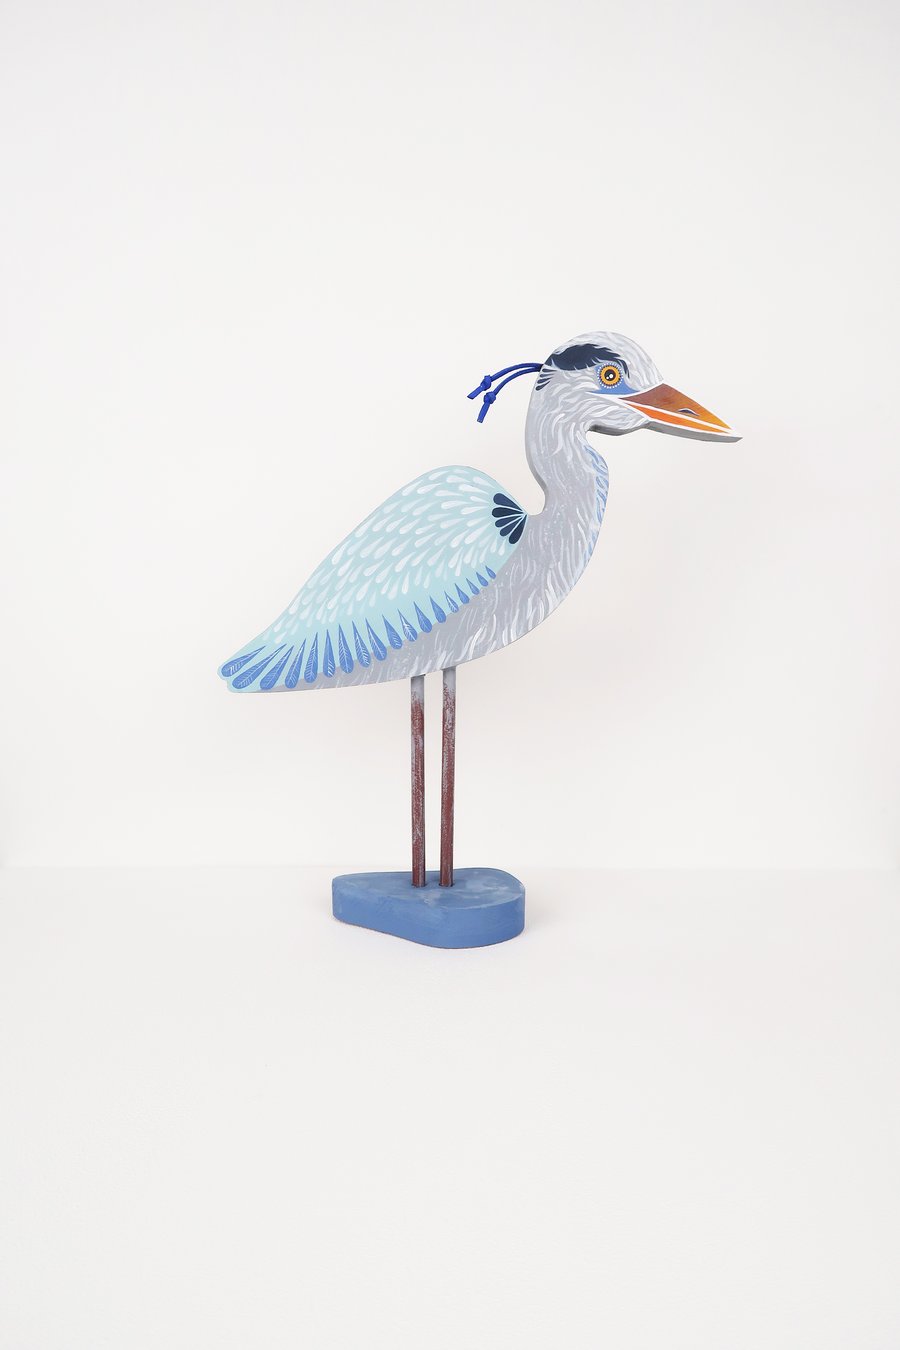 Blue heron ornament, hand painted wooden bird art, water bird decoration.